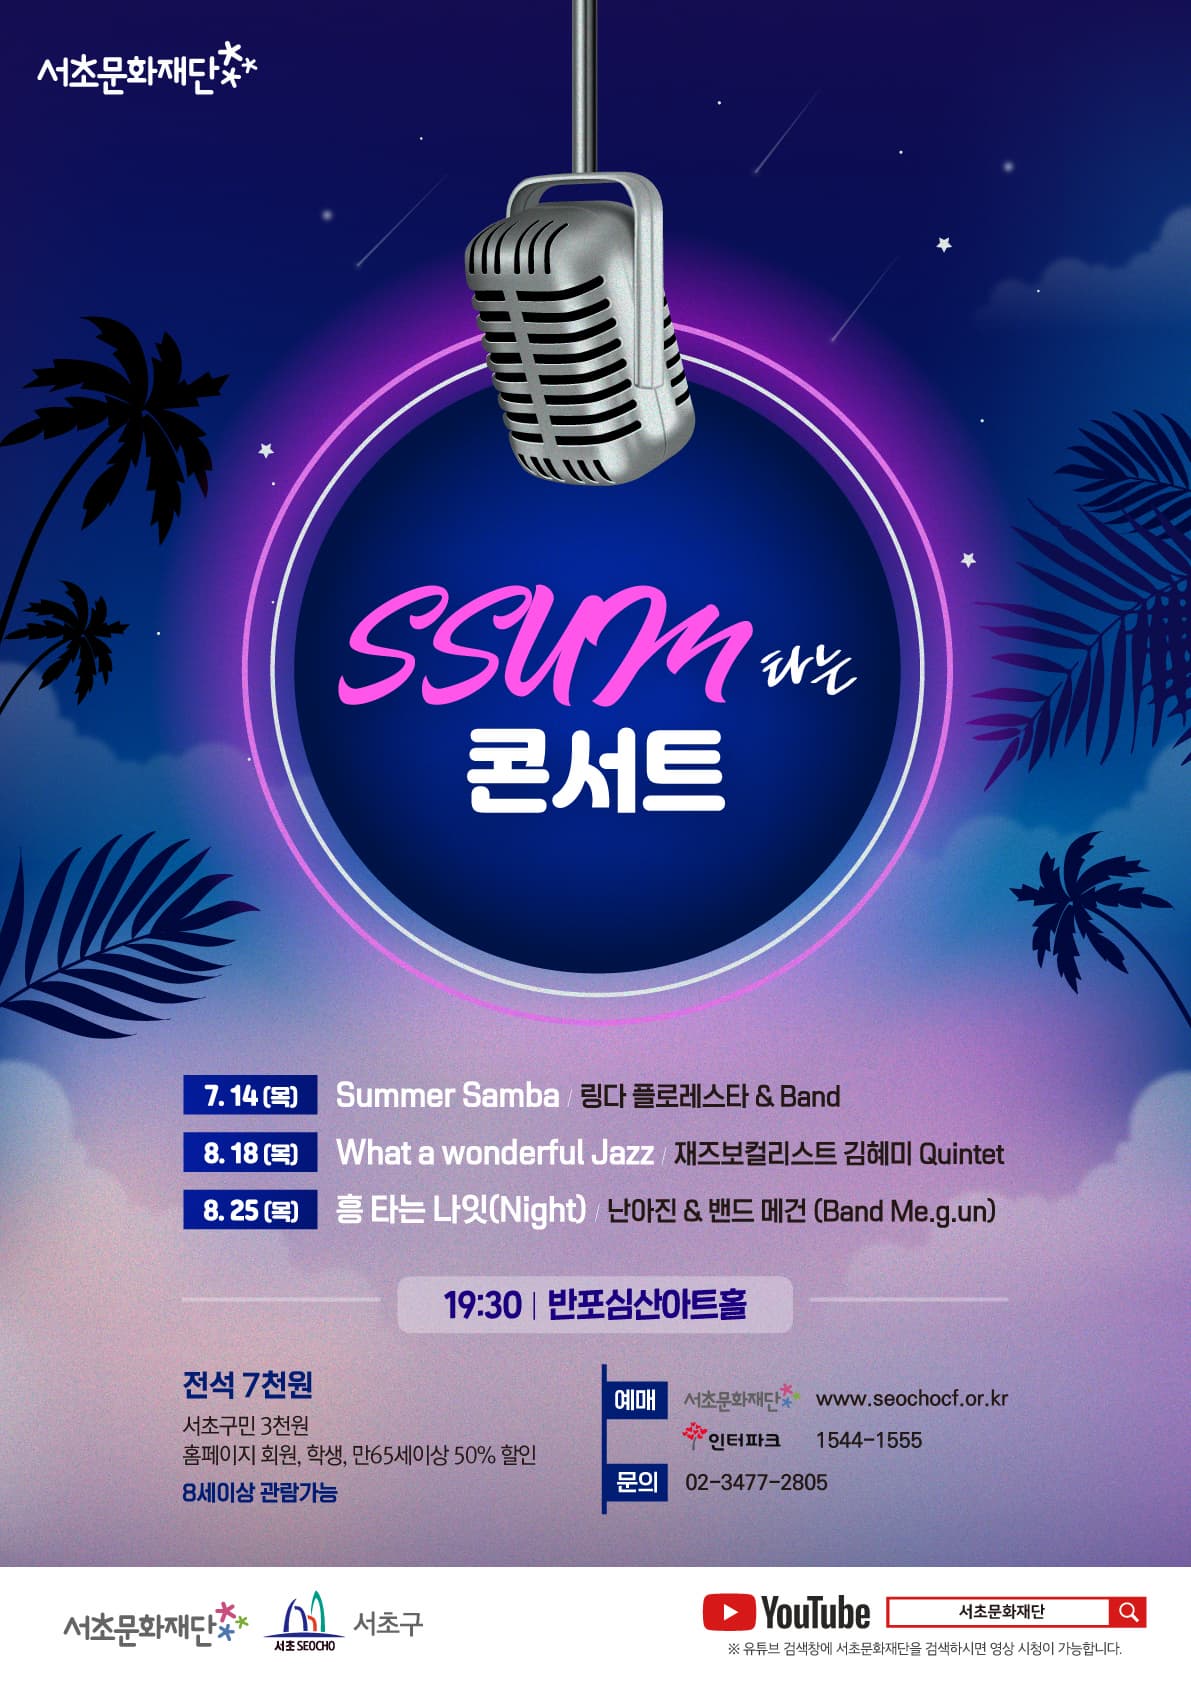 문화초대이벤트 'SSUM 타는 콘서트 - 흥 타는 나잇(Night)'